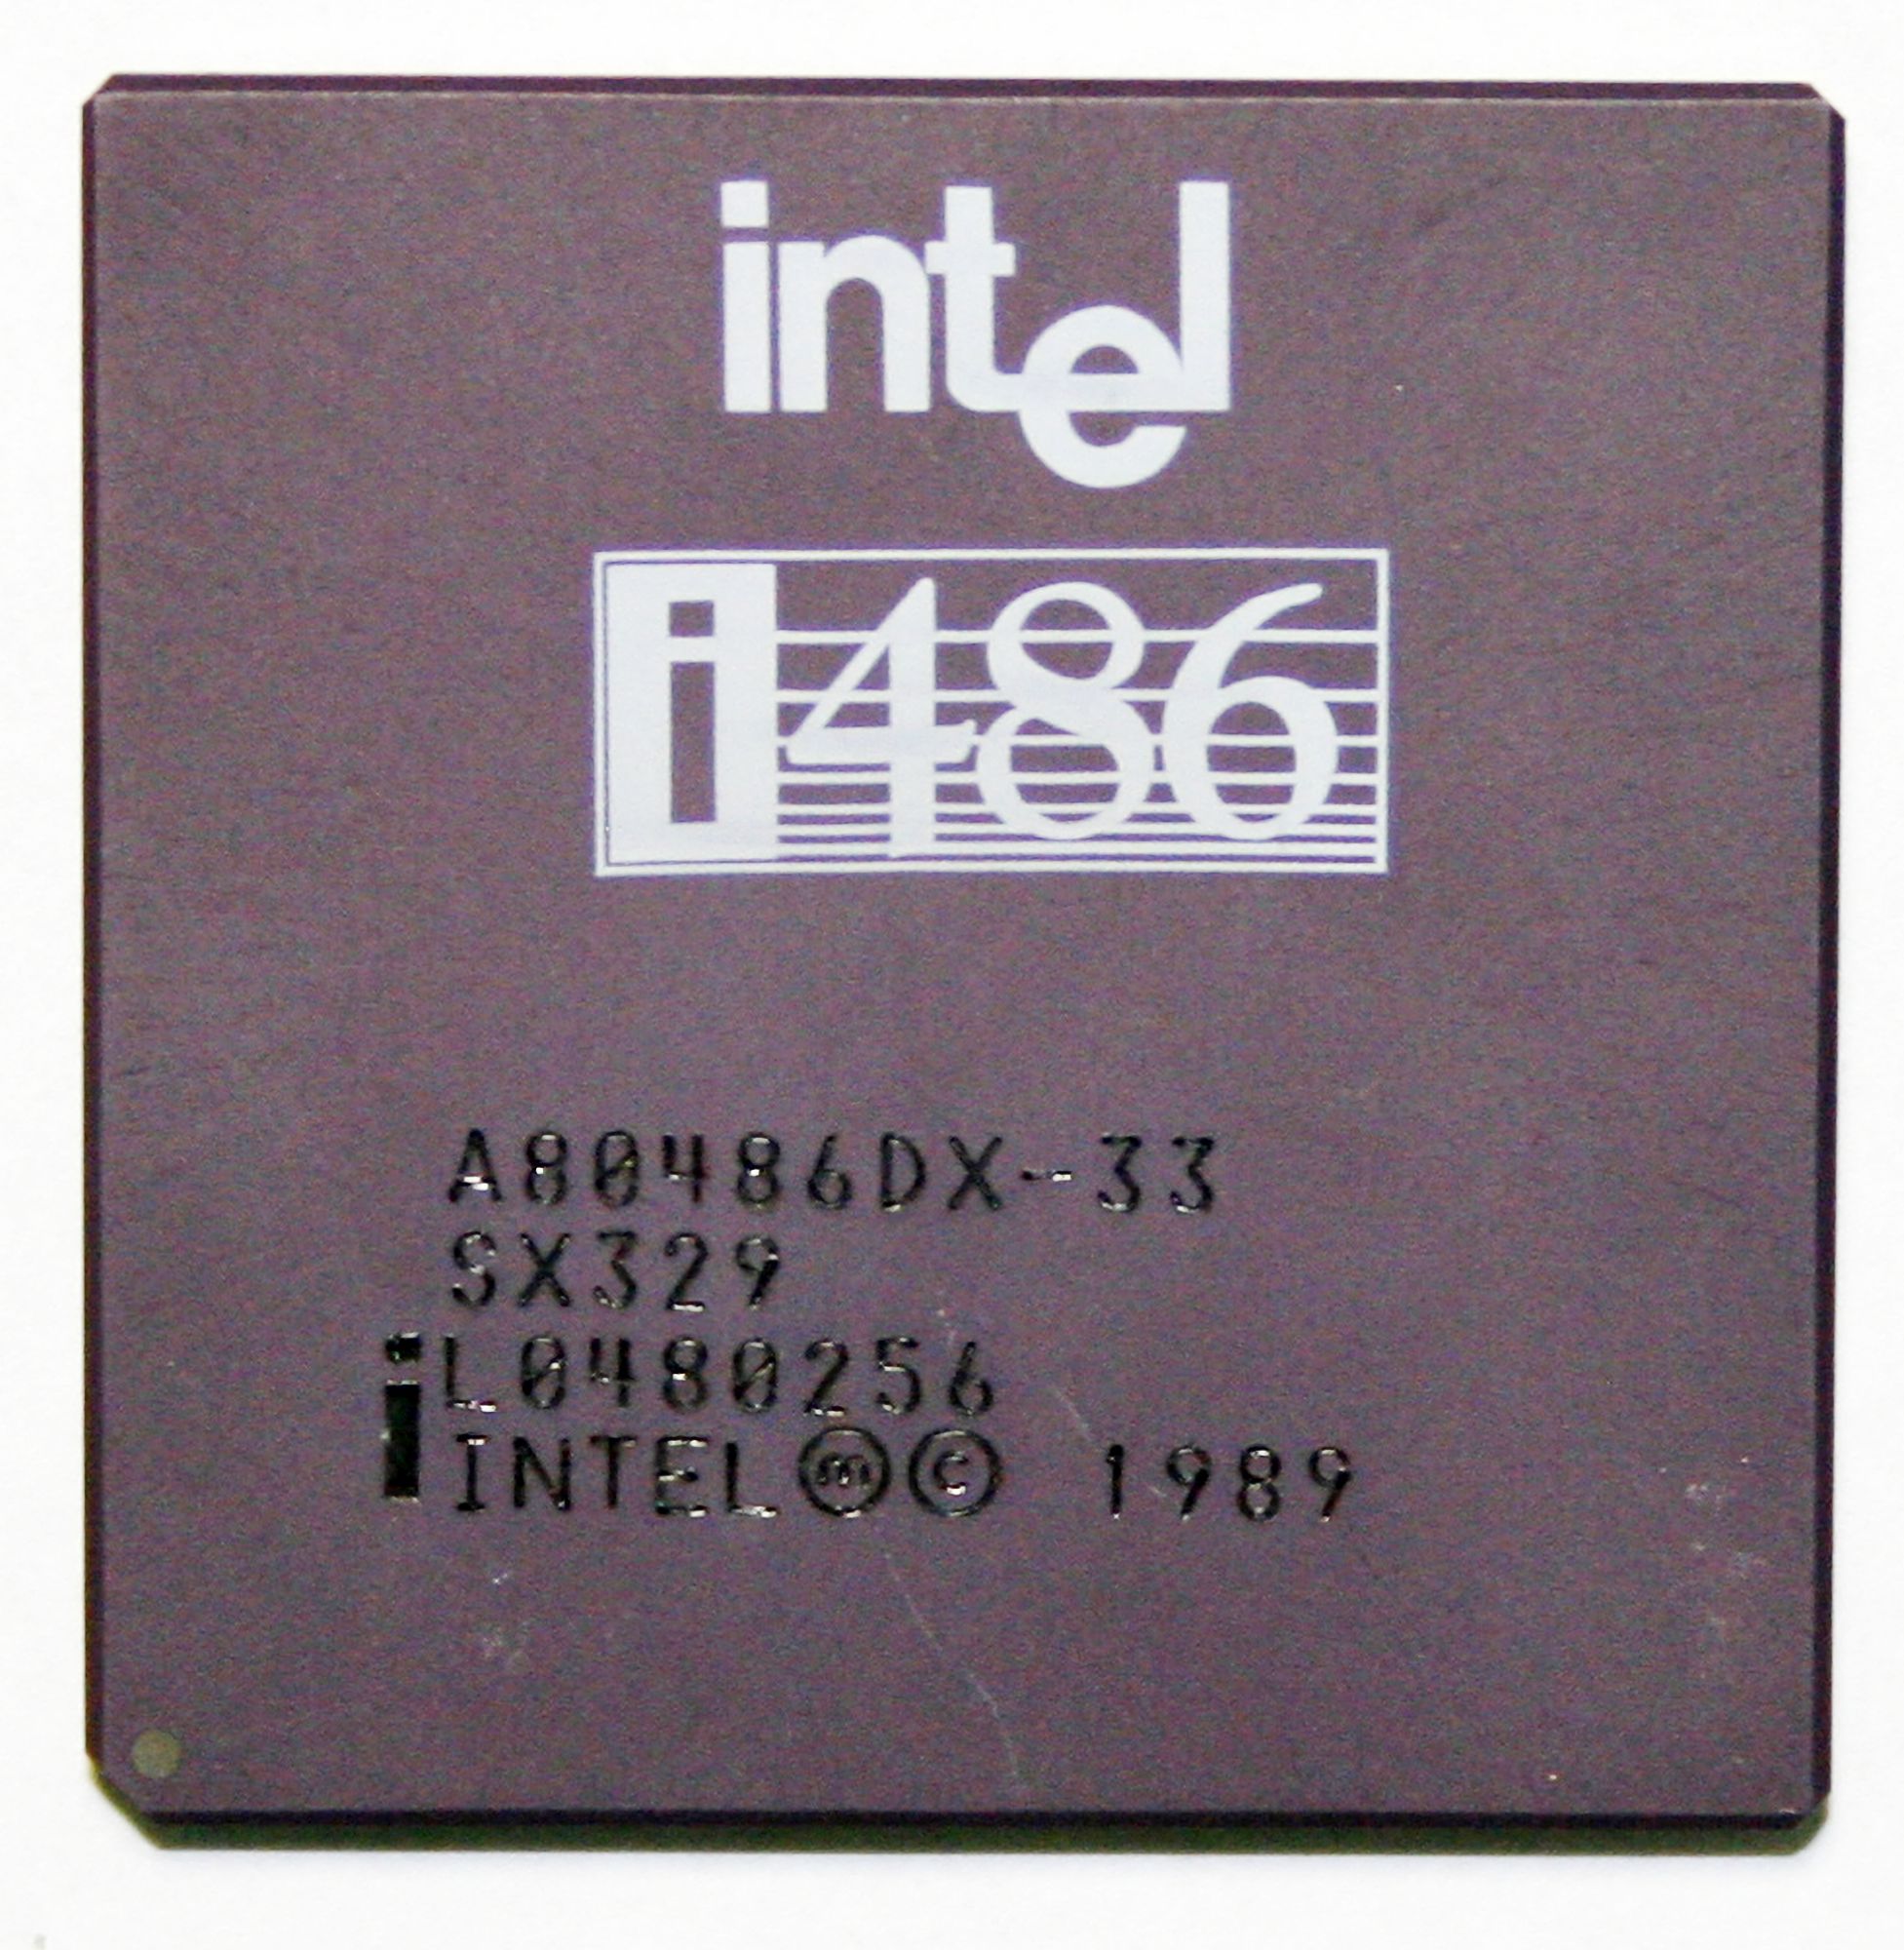 Процессор Intel 486DX с тактовой частотой 33 мегагерца<br>